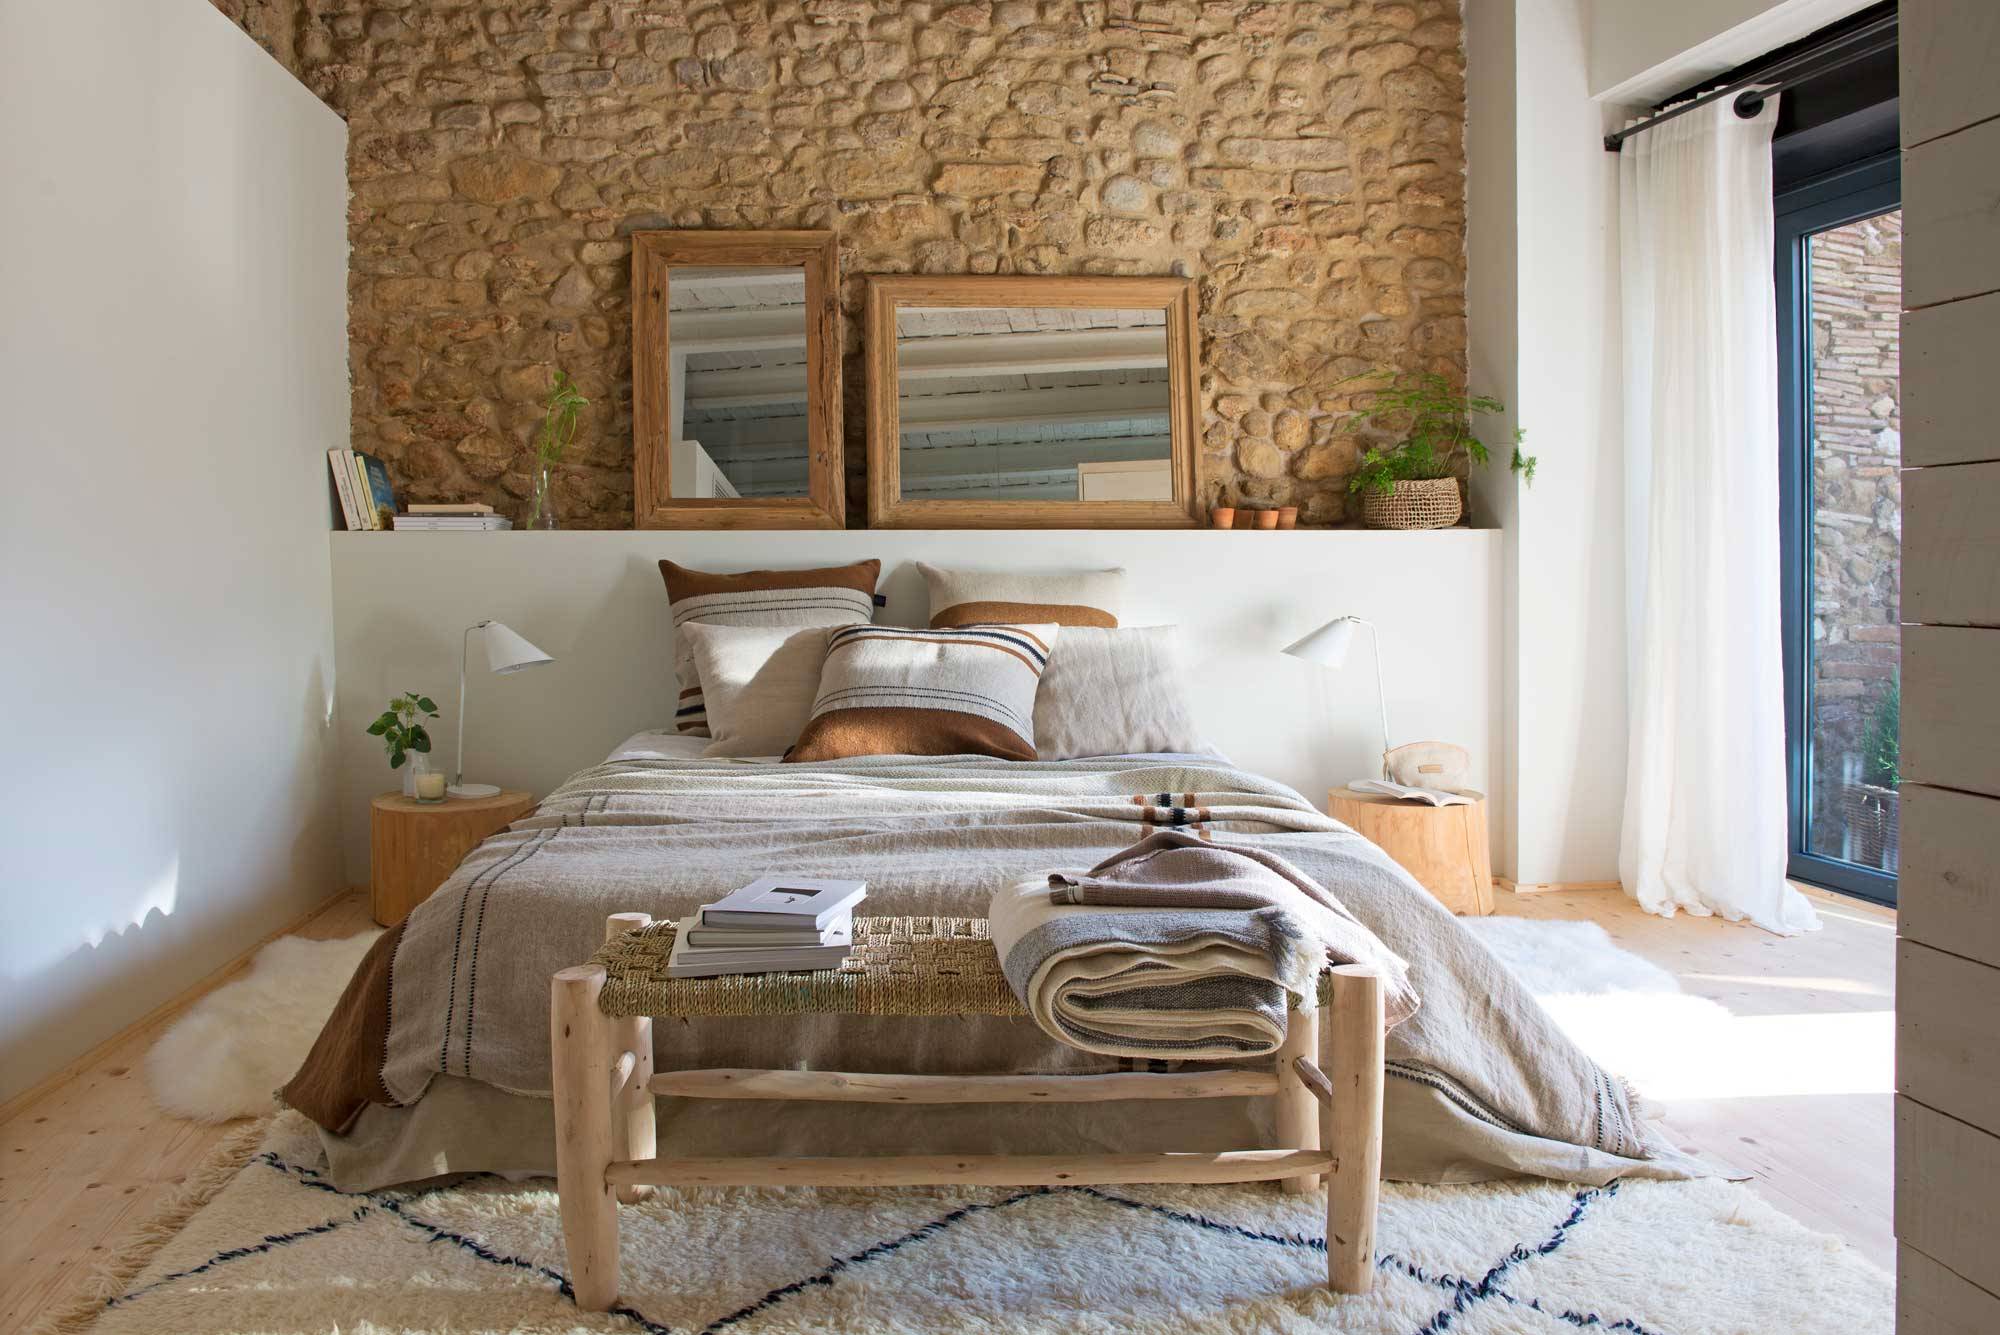 Dormitorio moderno con pared de piedra y espejos sobre el cabecero